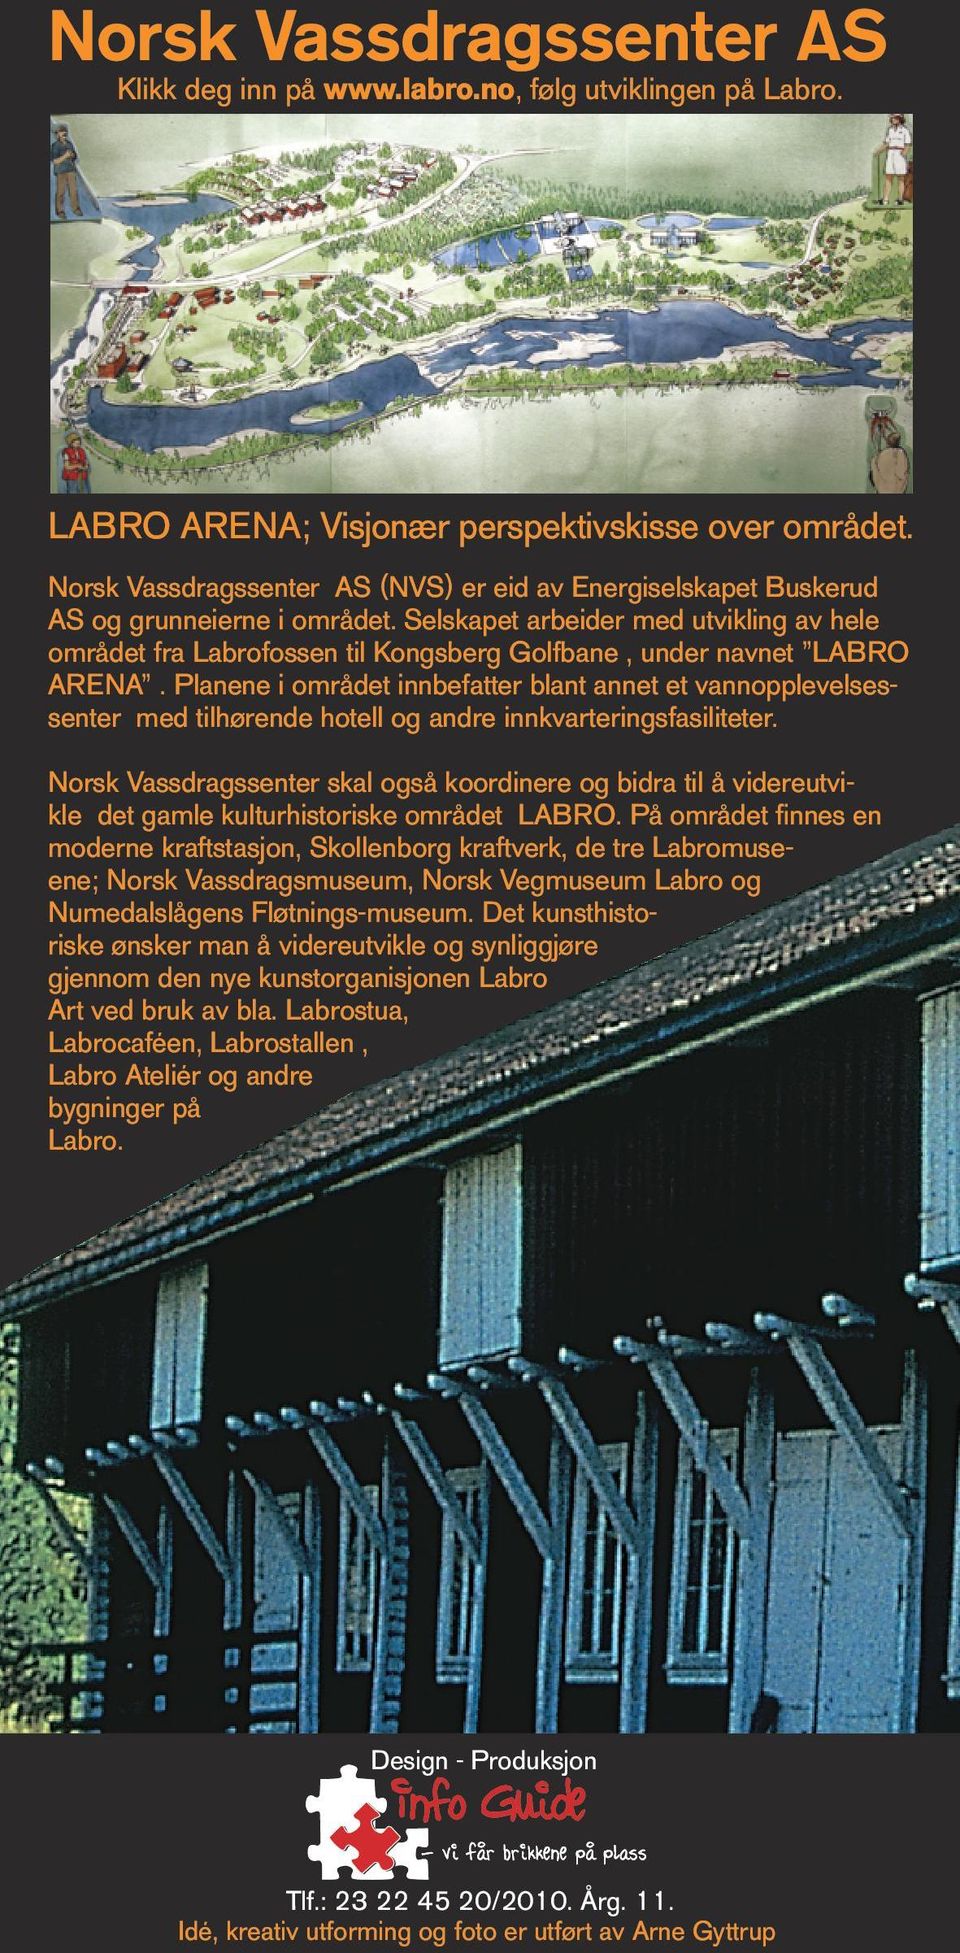 Selskapet arbeider med utvikling av hele området fra Labrofossen til Kongsberg Golfbane, under navnet LABRO ARENA.